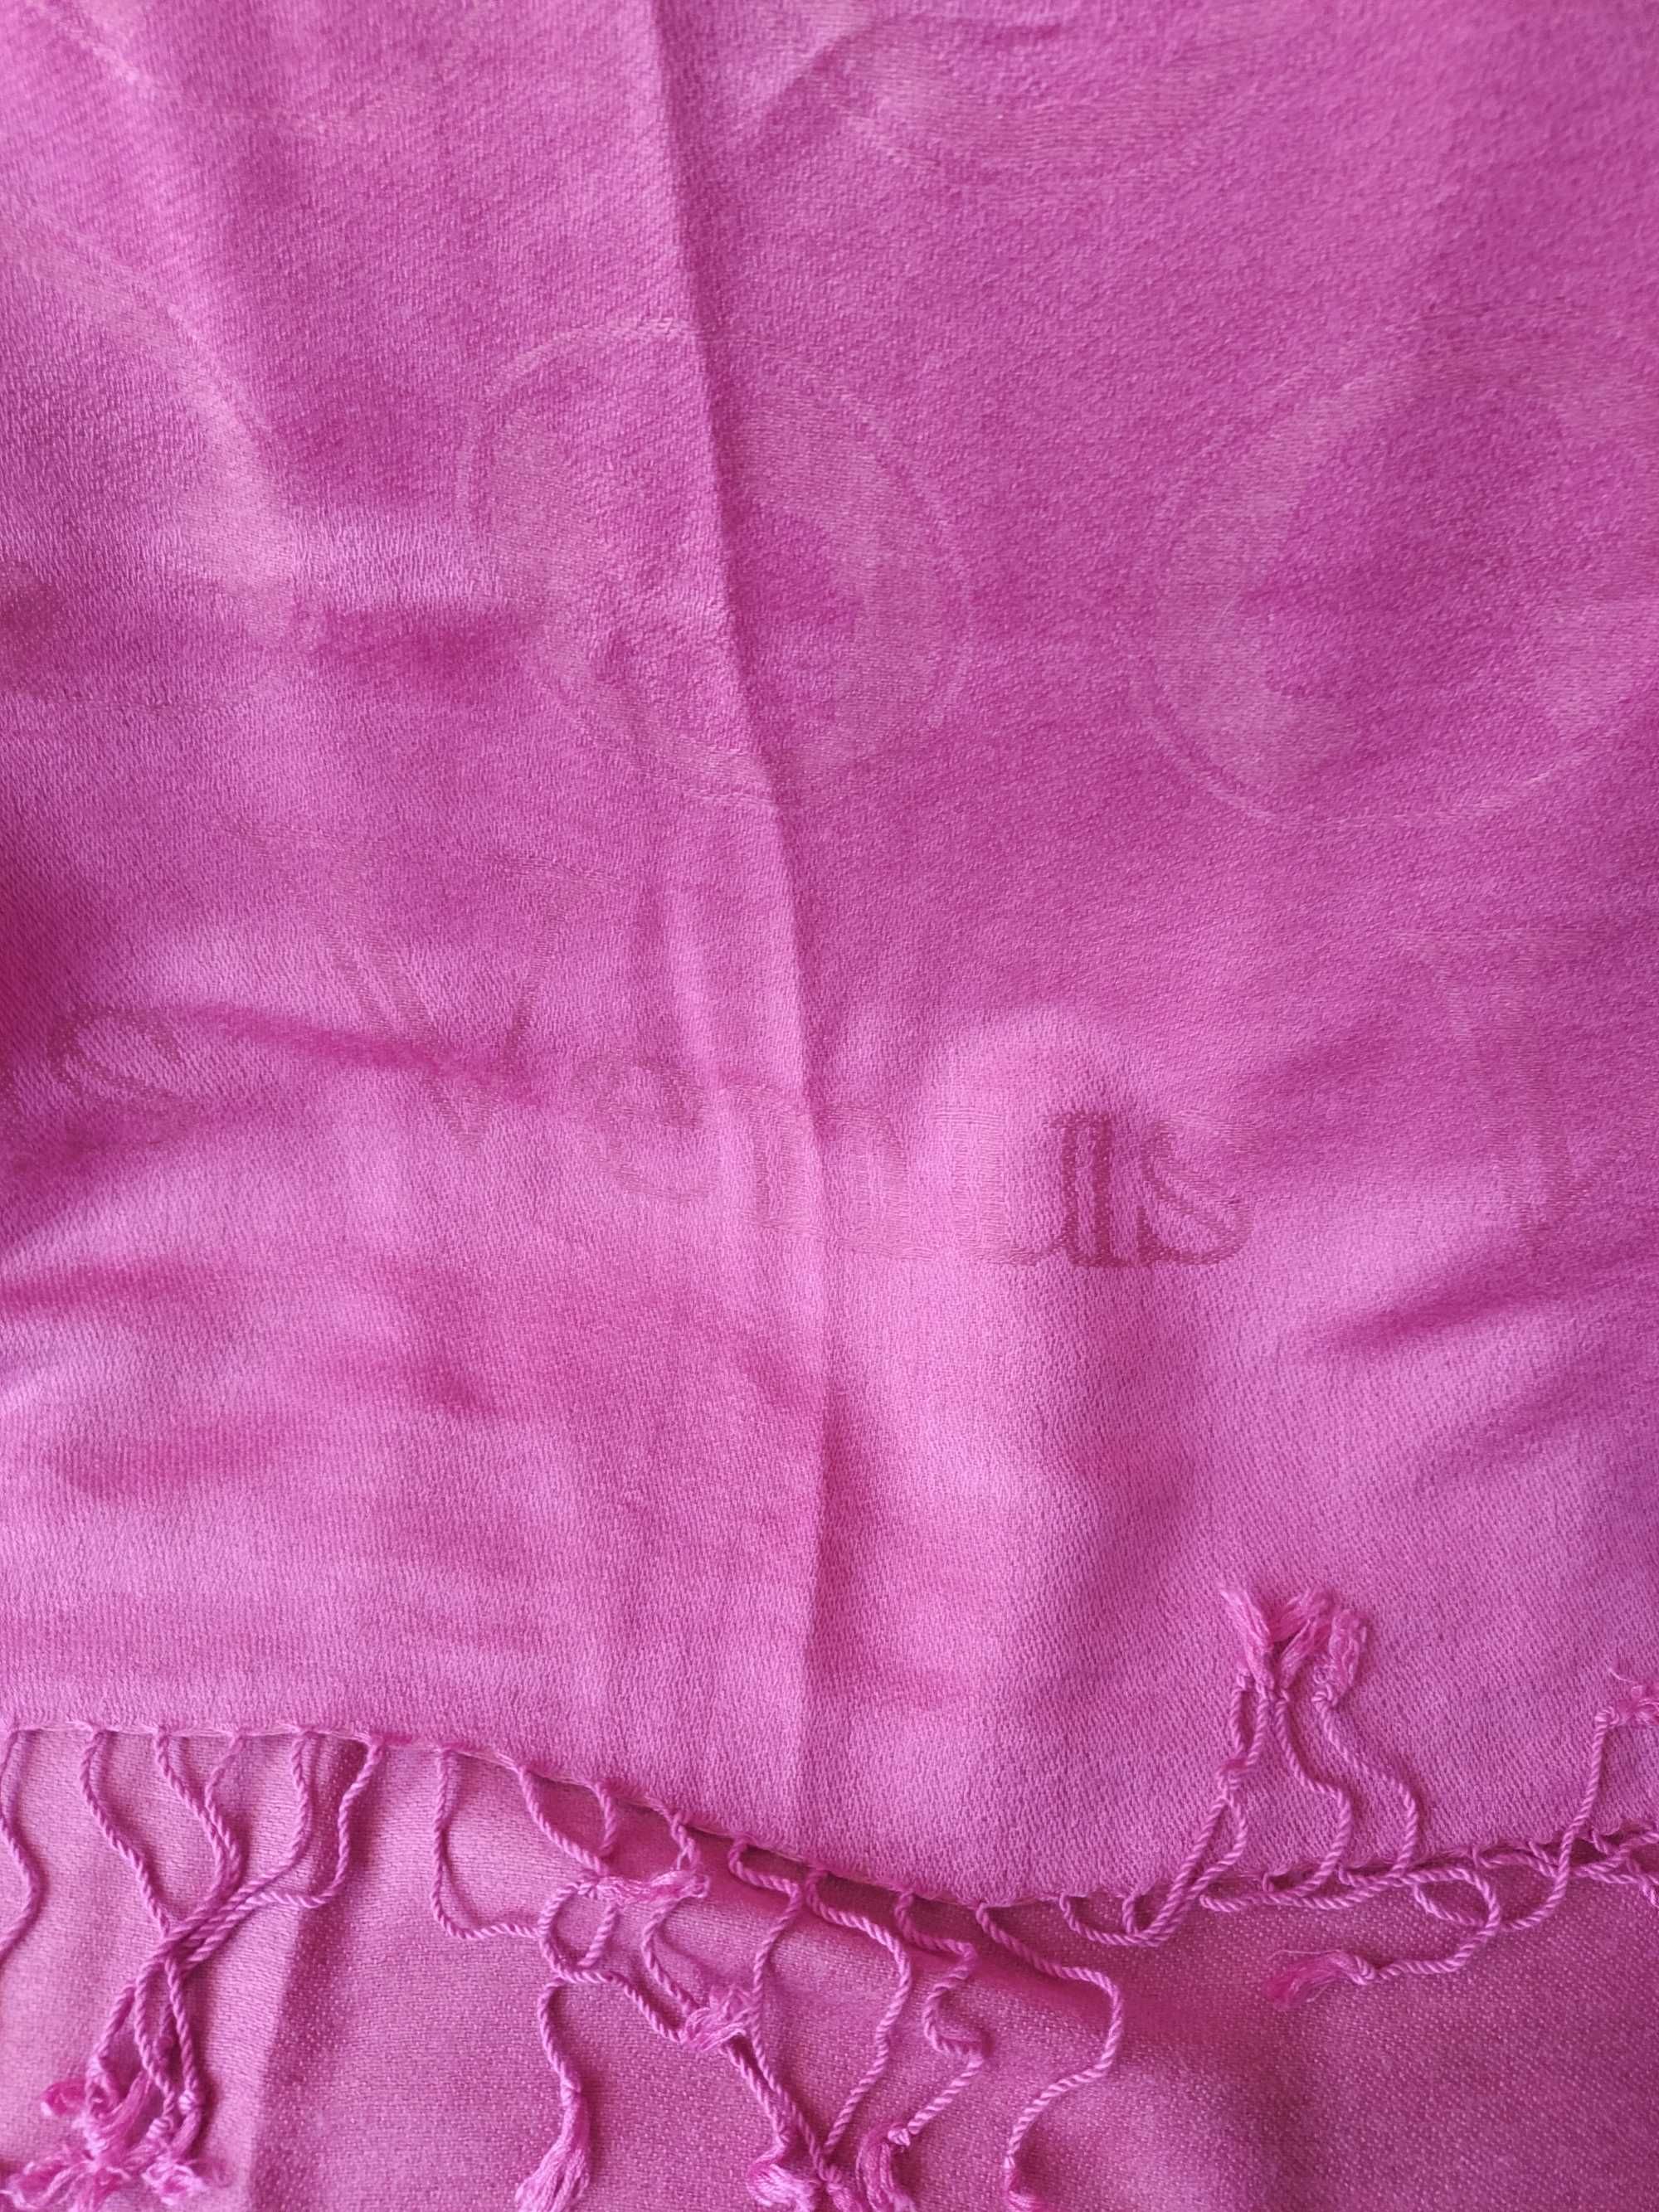 Echarpe nova rosa 30% seda padrão Deusa Vénus 1,80x0,70m